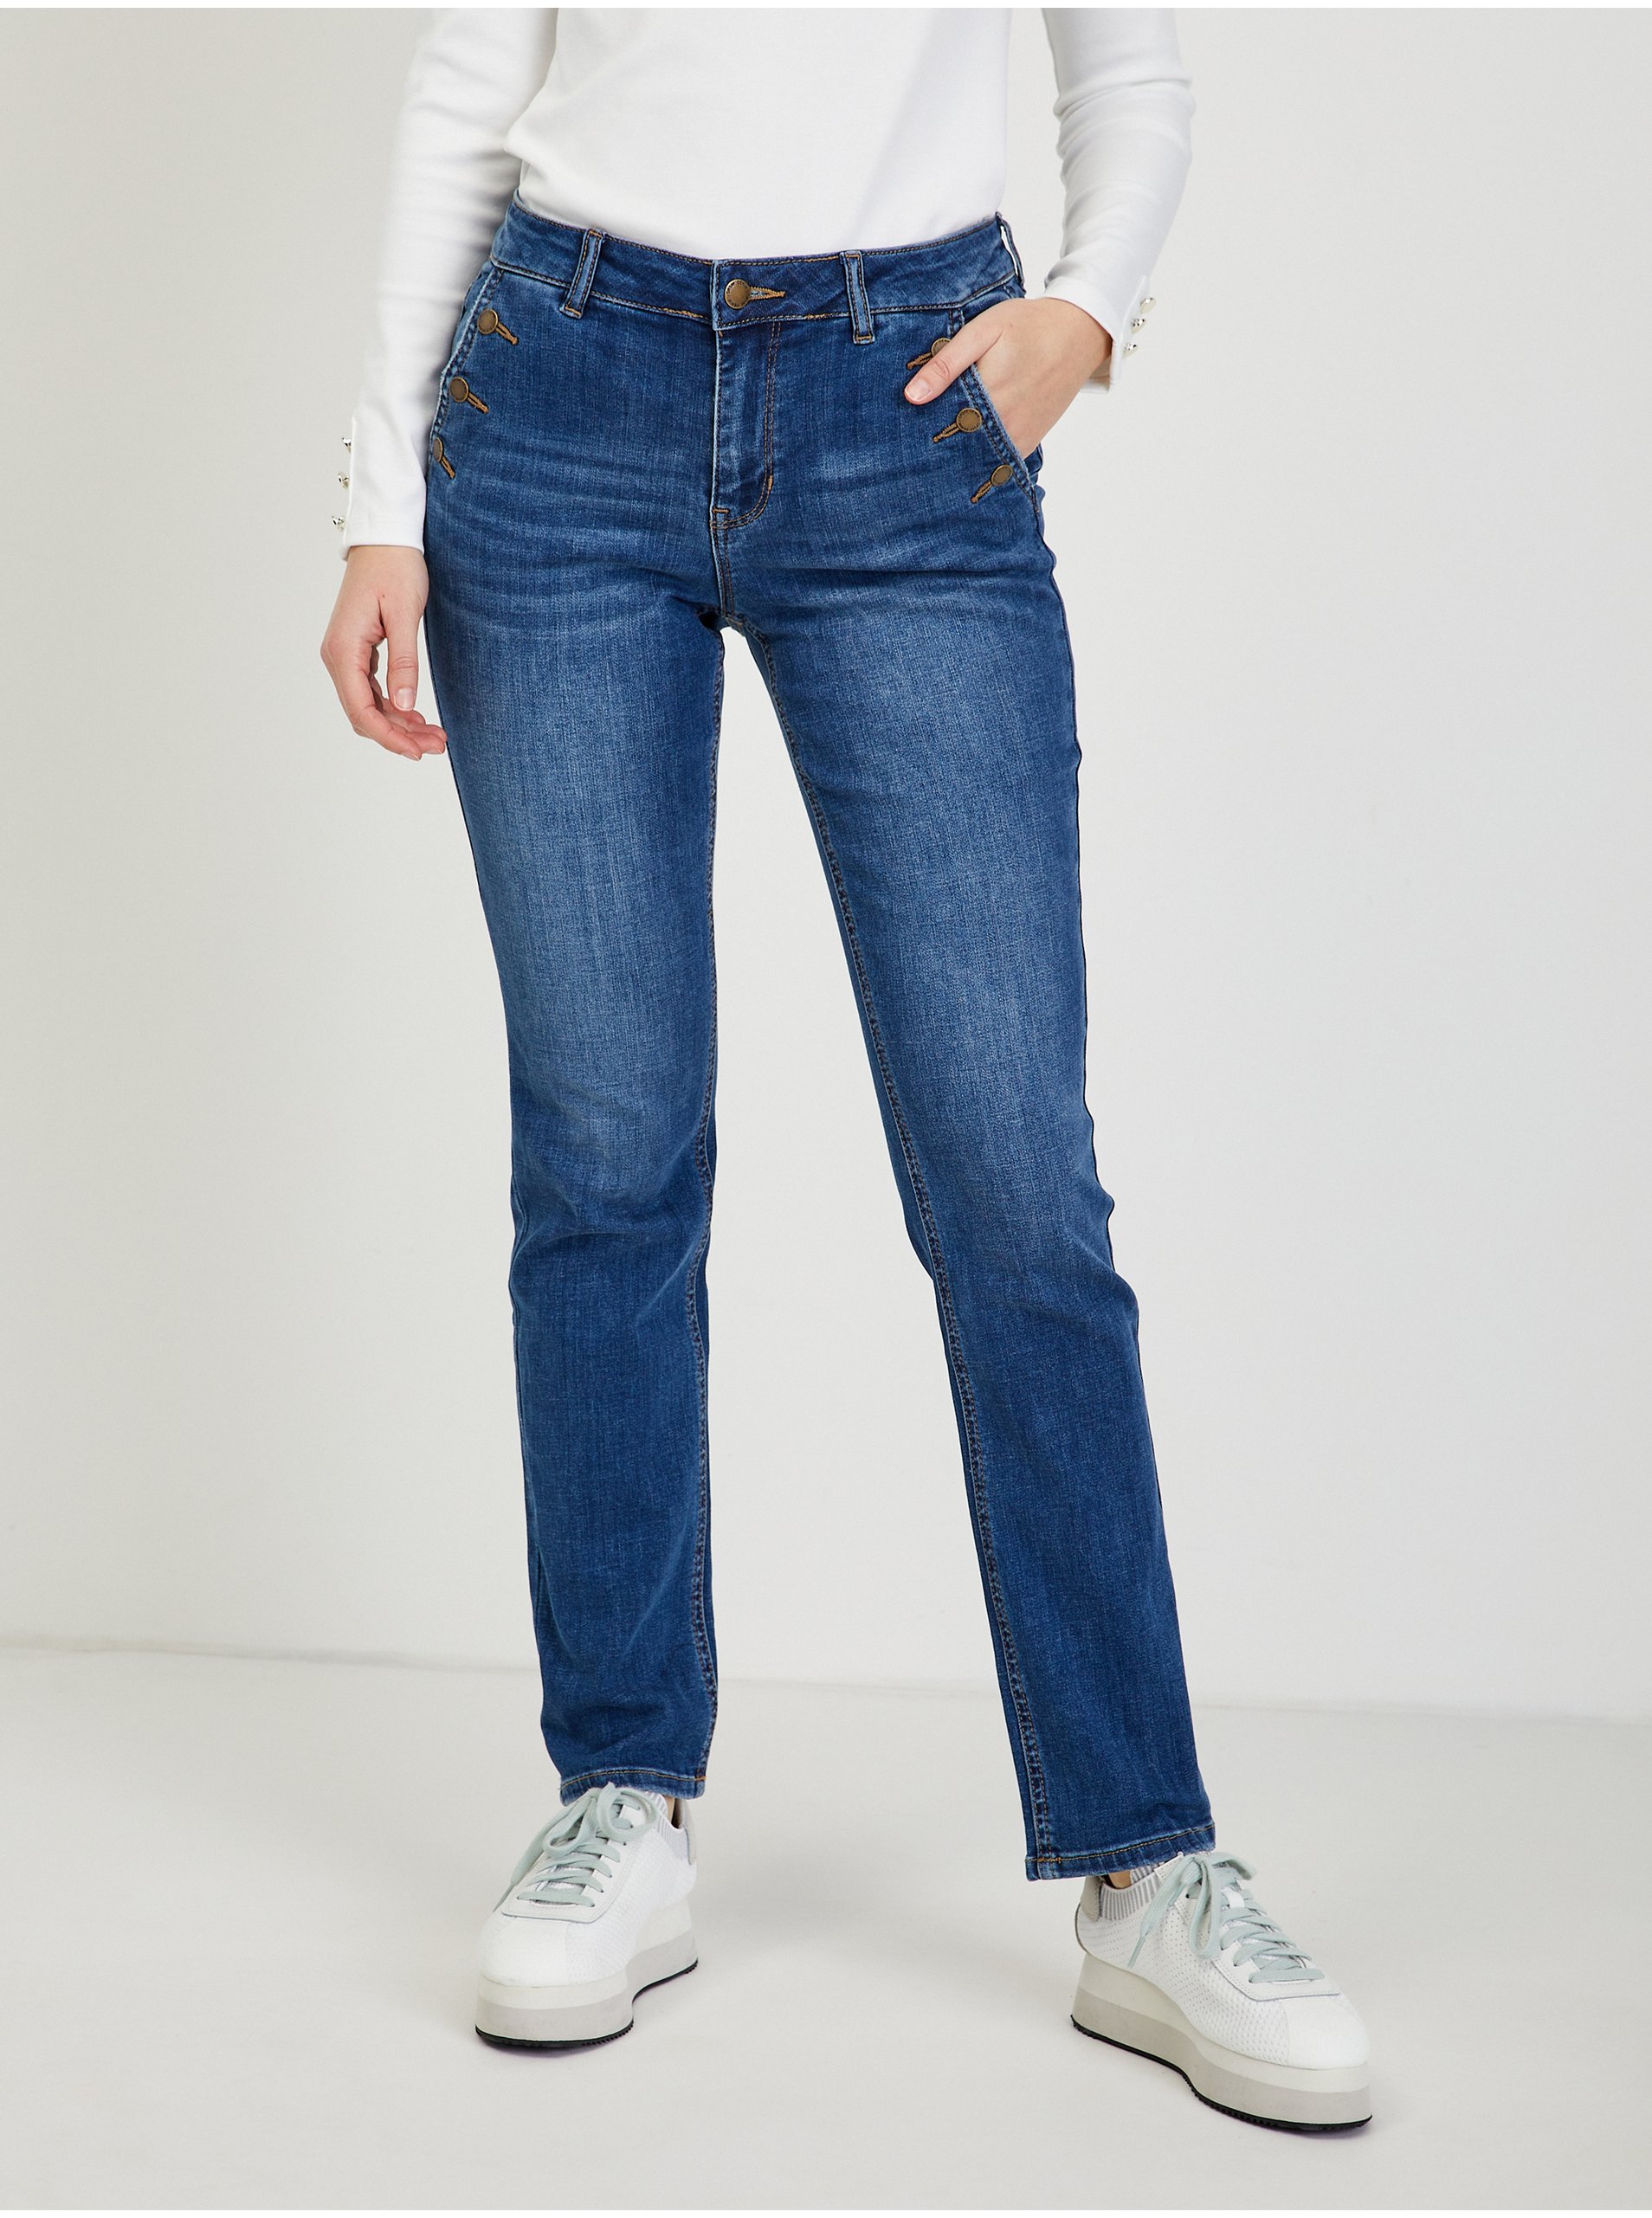 Women's jeans Orsay Na razprodaji-orsay 1